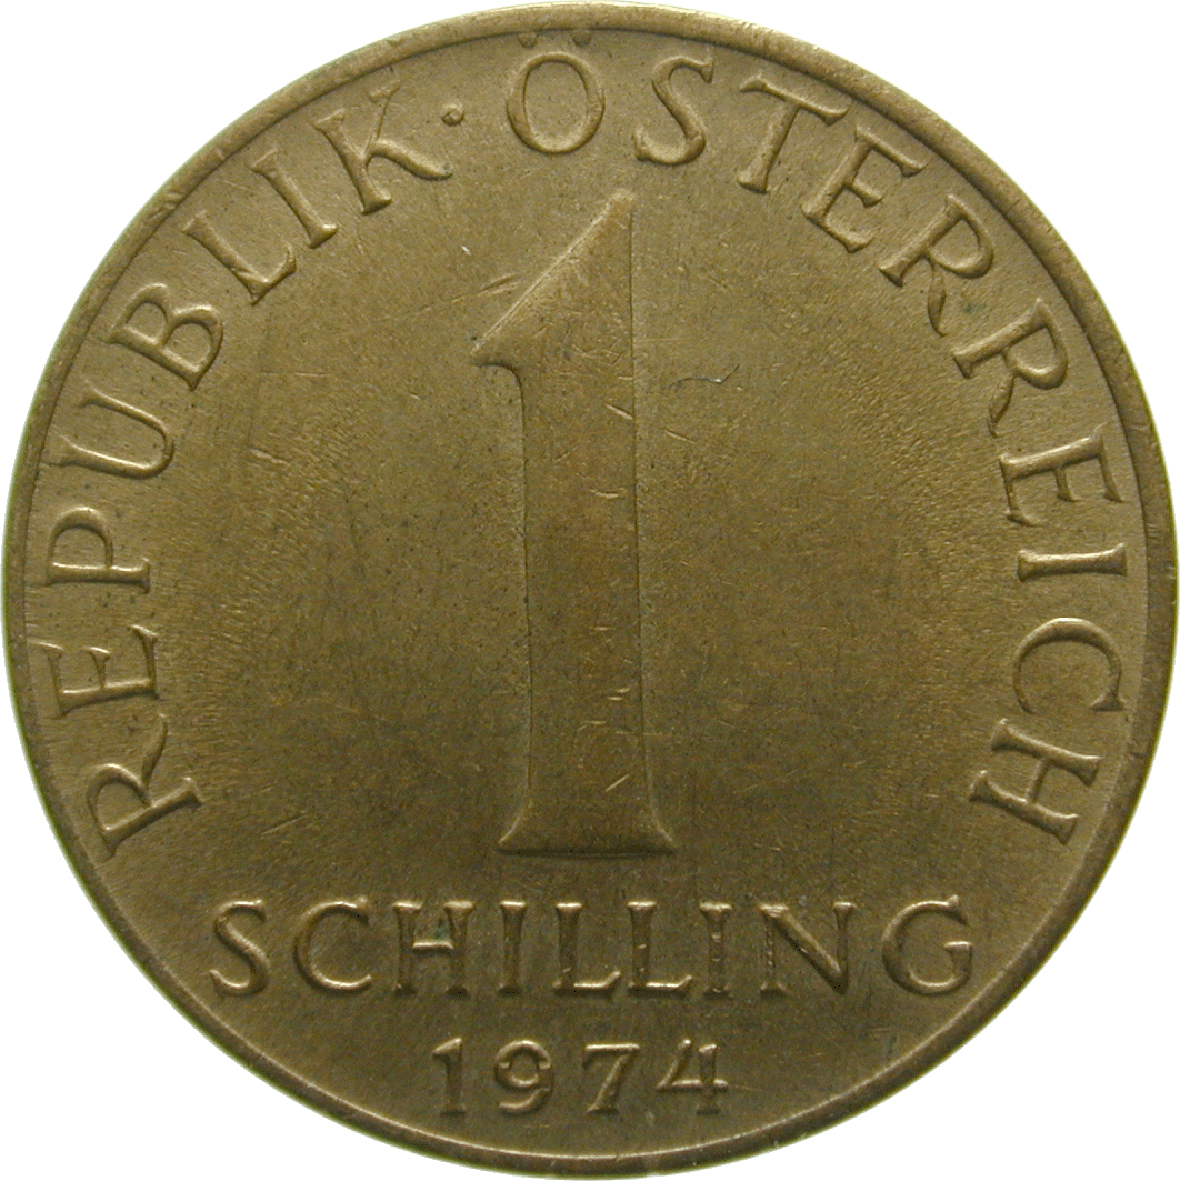 Republik Österreich, 1 Schilling 1974 (obverse)